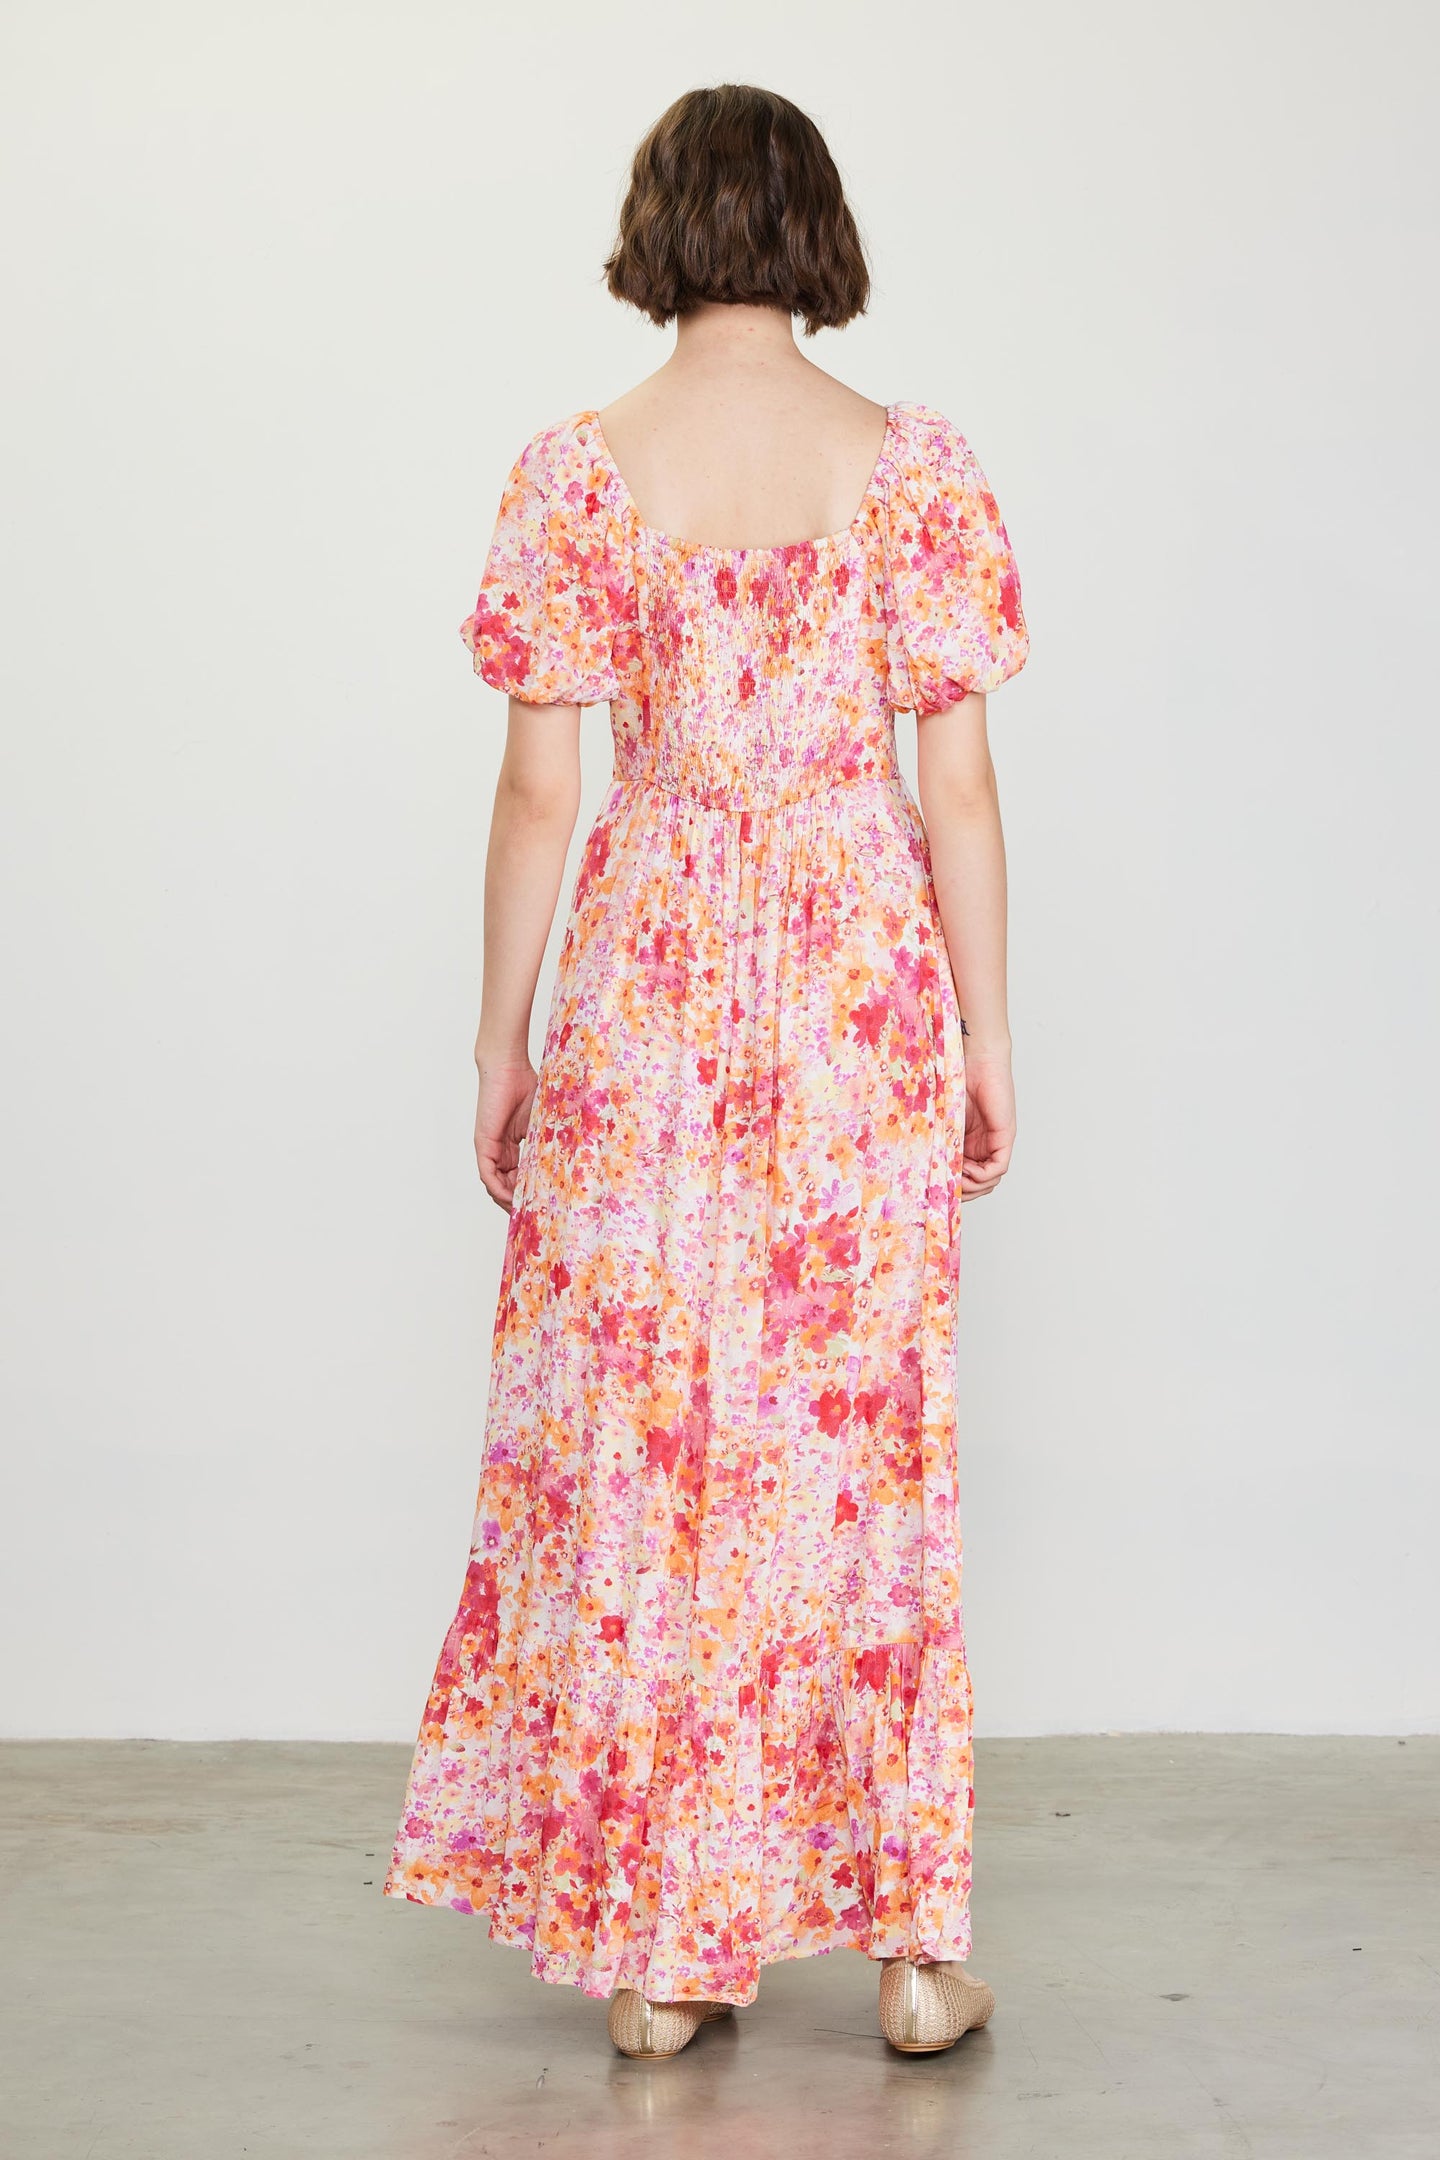 Peachy Floral Print Maxi Dress